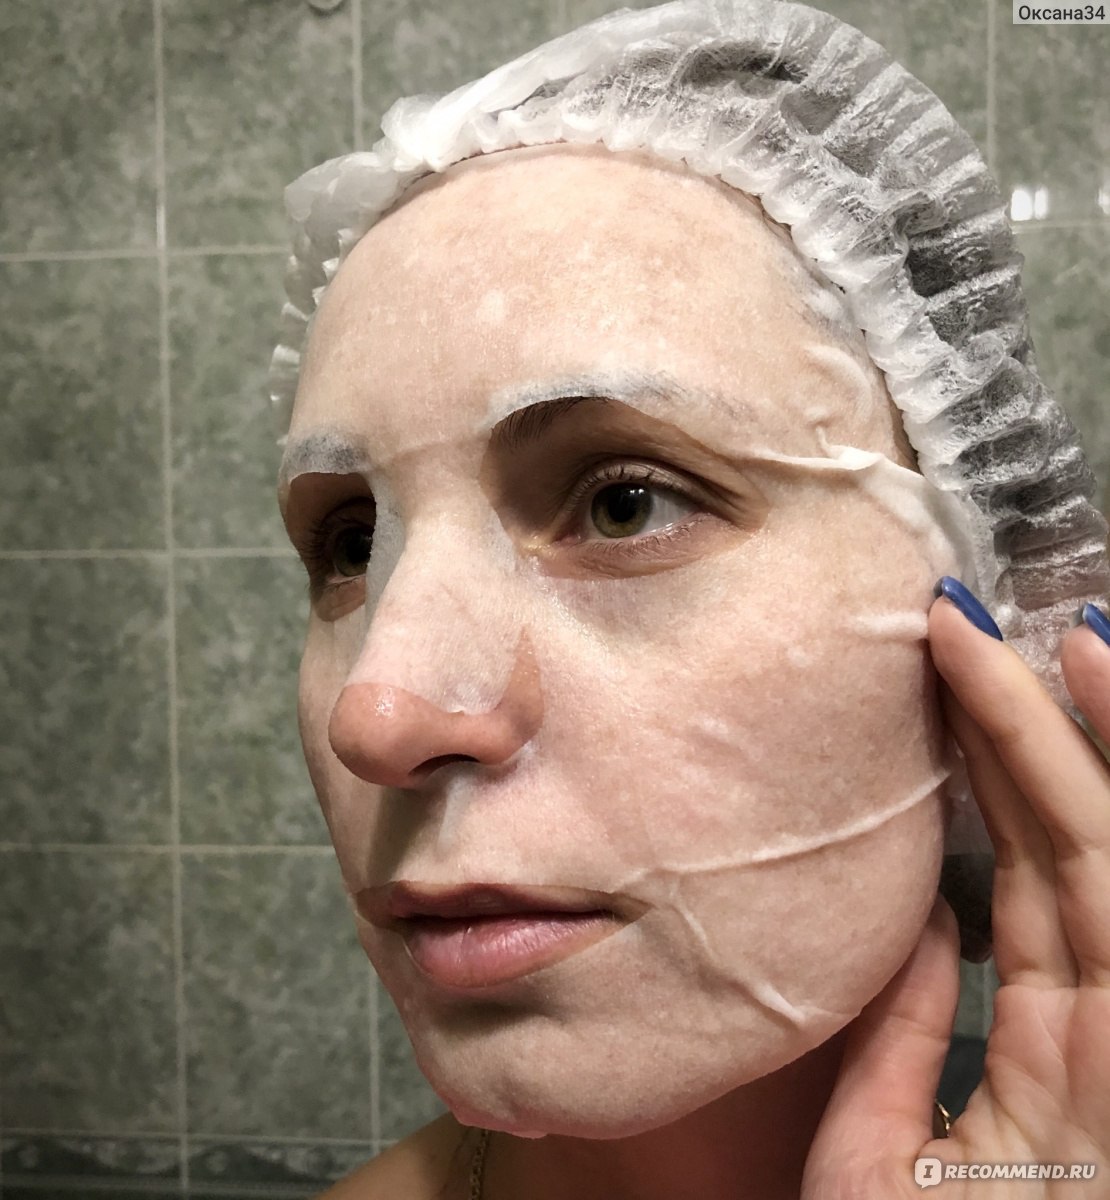 Тканевая маска для лица Cosmo-larabar Для чувствительной, повреждённой кожи